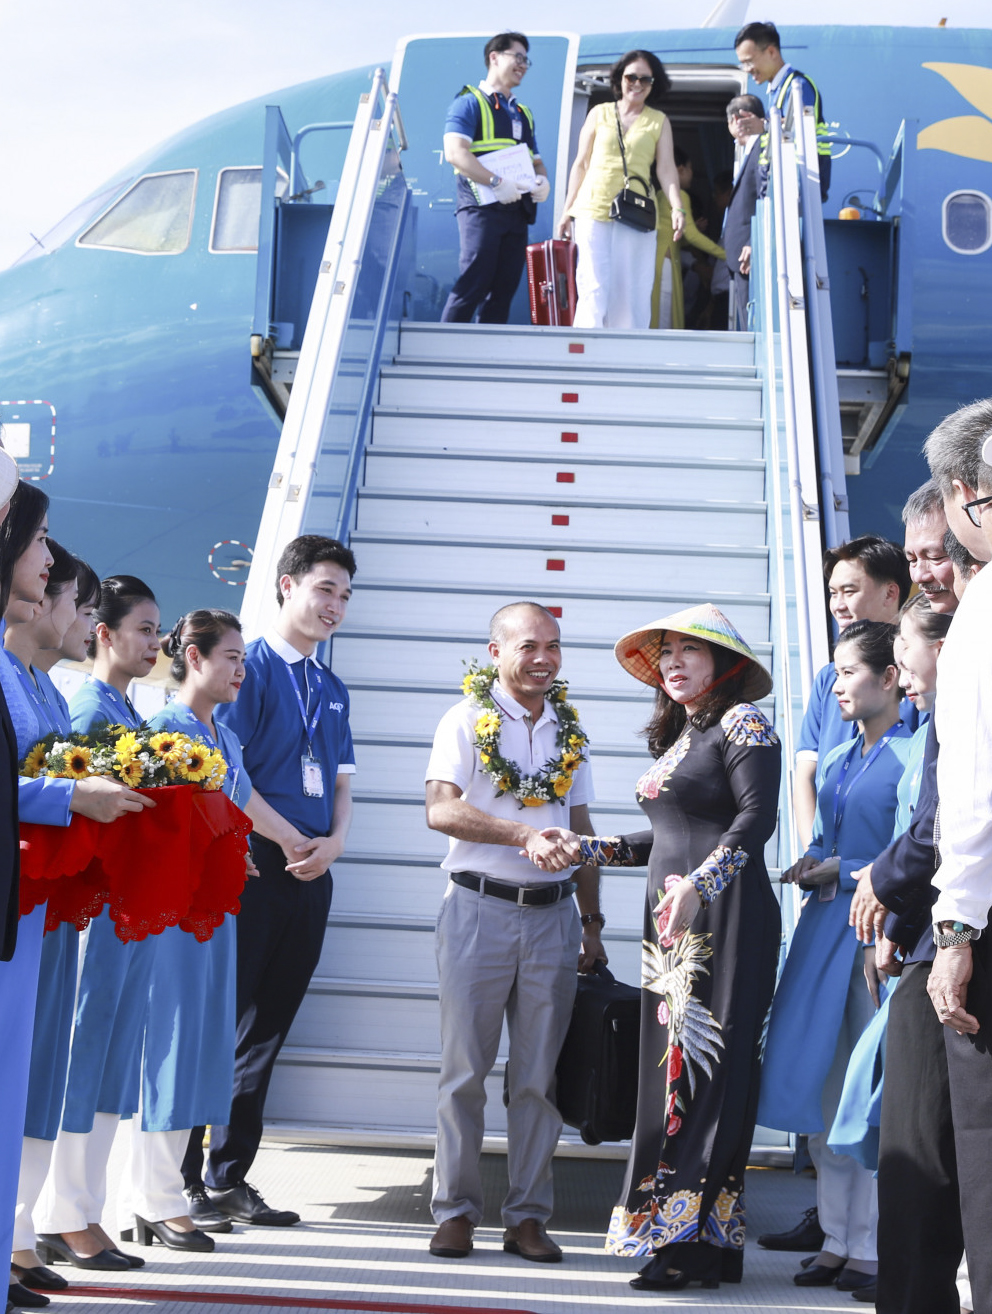 Lãnh đạo Sở Du lịch tặng hoa chúc mừng vị khách đầu tiên xuống máy bay.